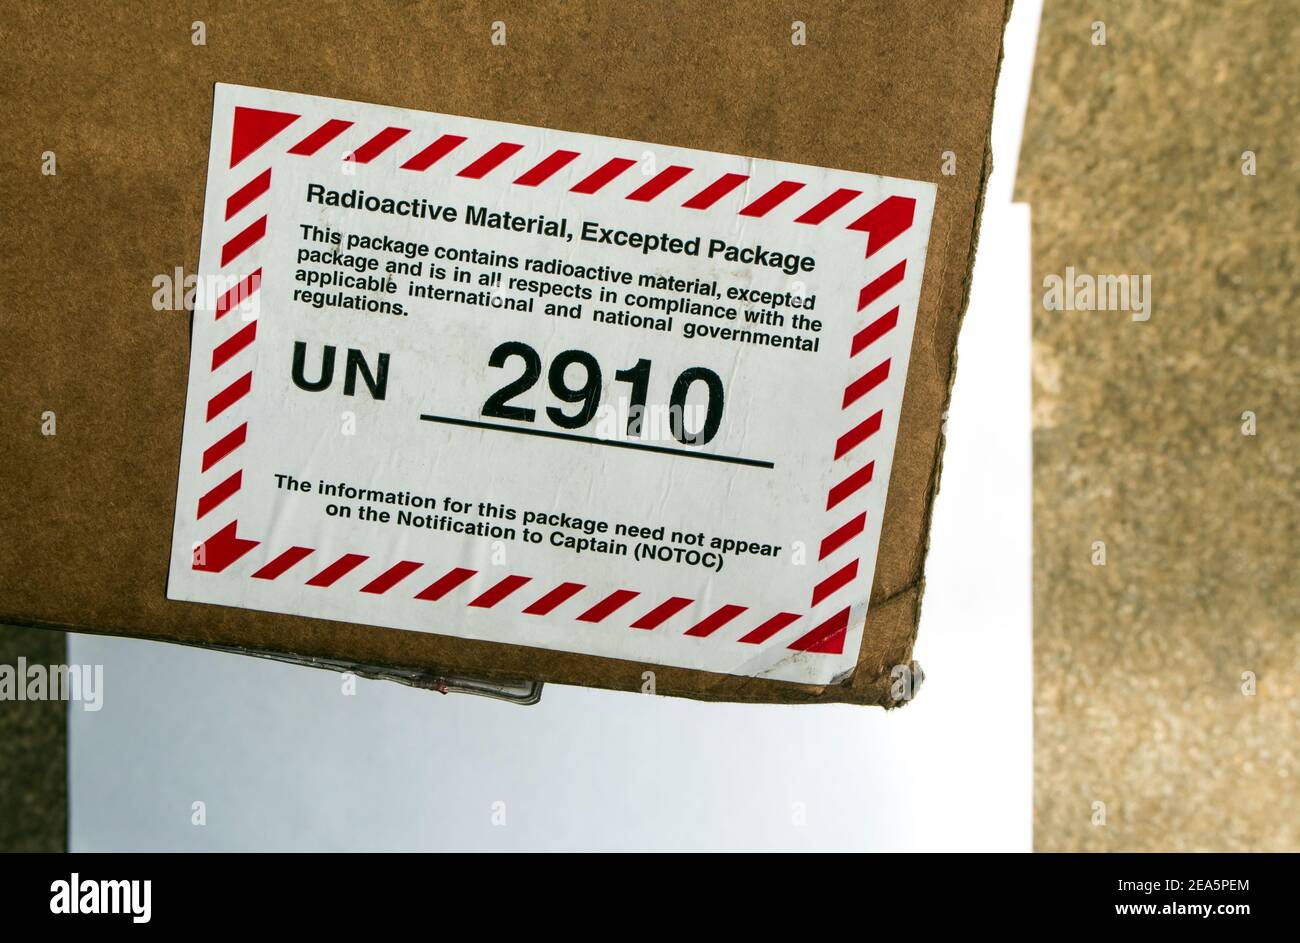 Das UN-Nummernschild für radioaktives Material, ausgenommenes Paket Stockfoto